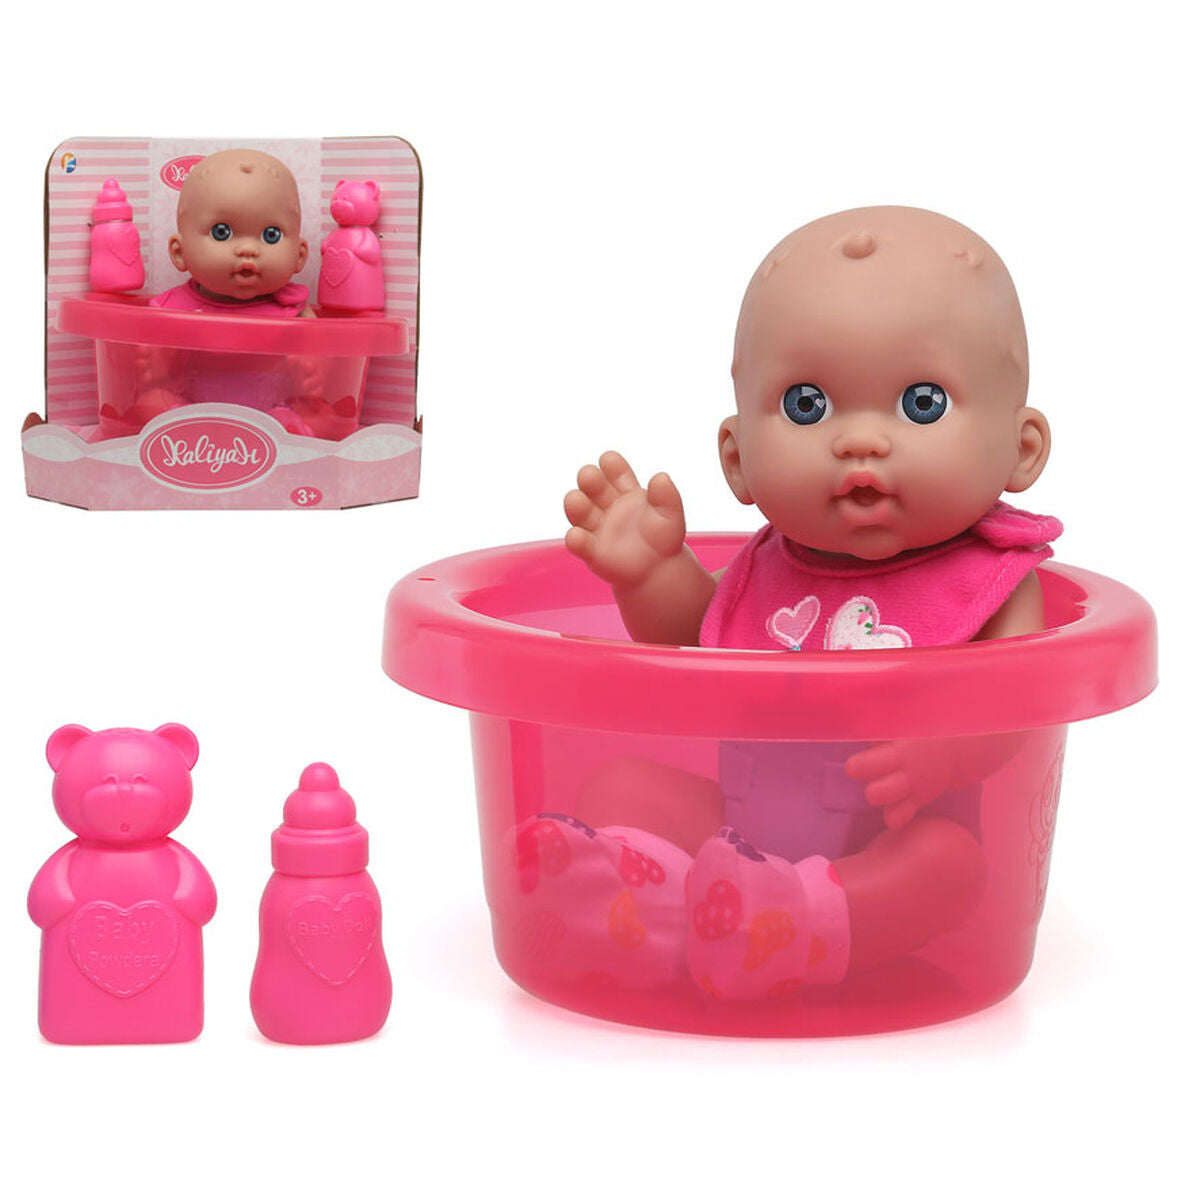 Baby doll Bathtub - Disponibile in 3-4 giorni lavorativi